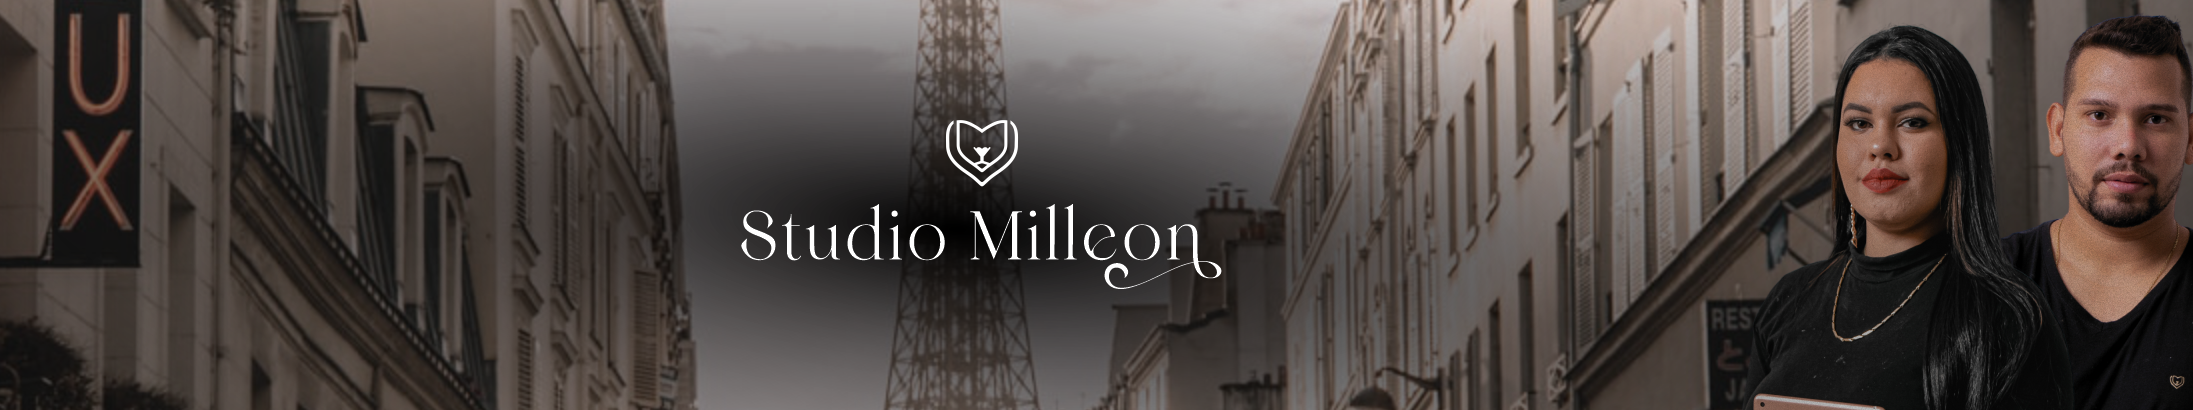 Bannière de profil de Studio Milleon